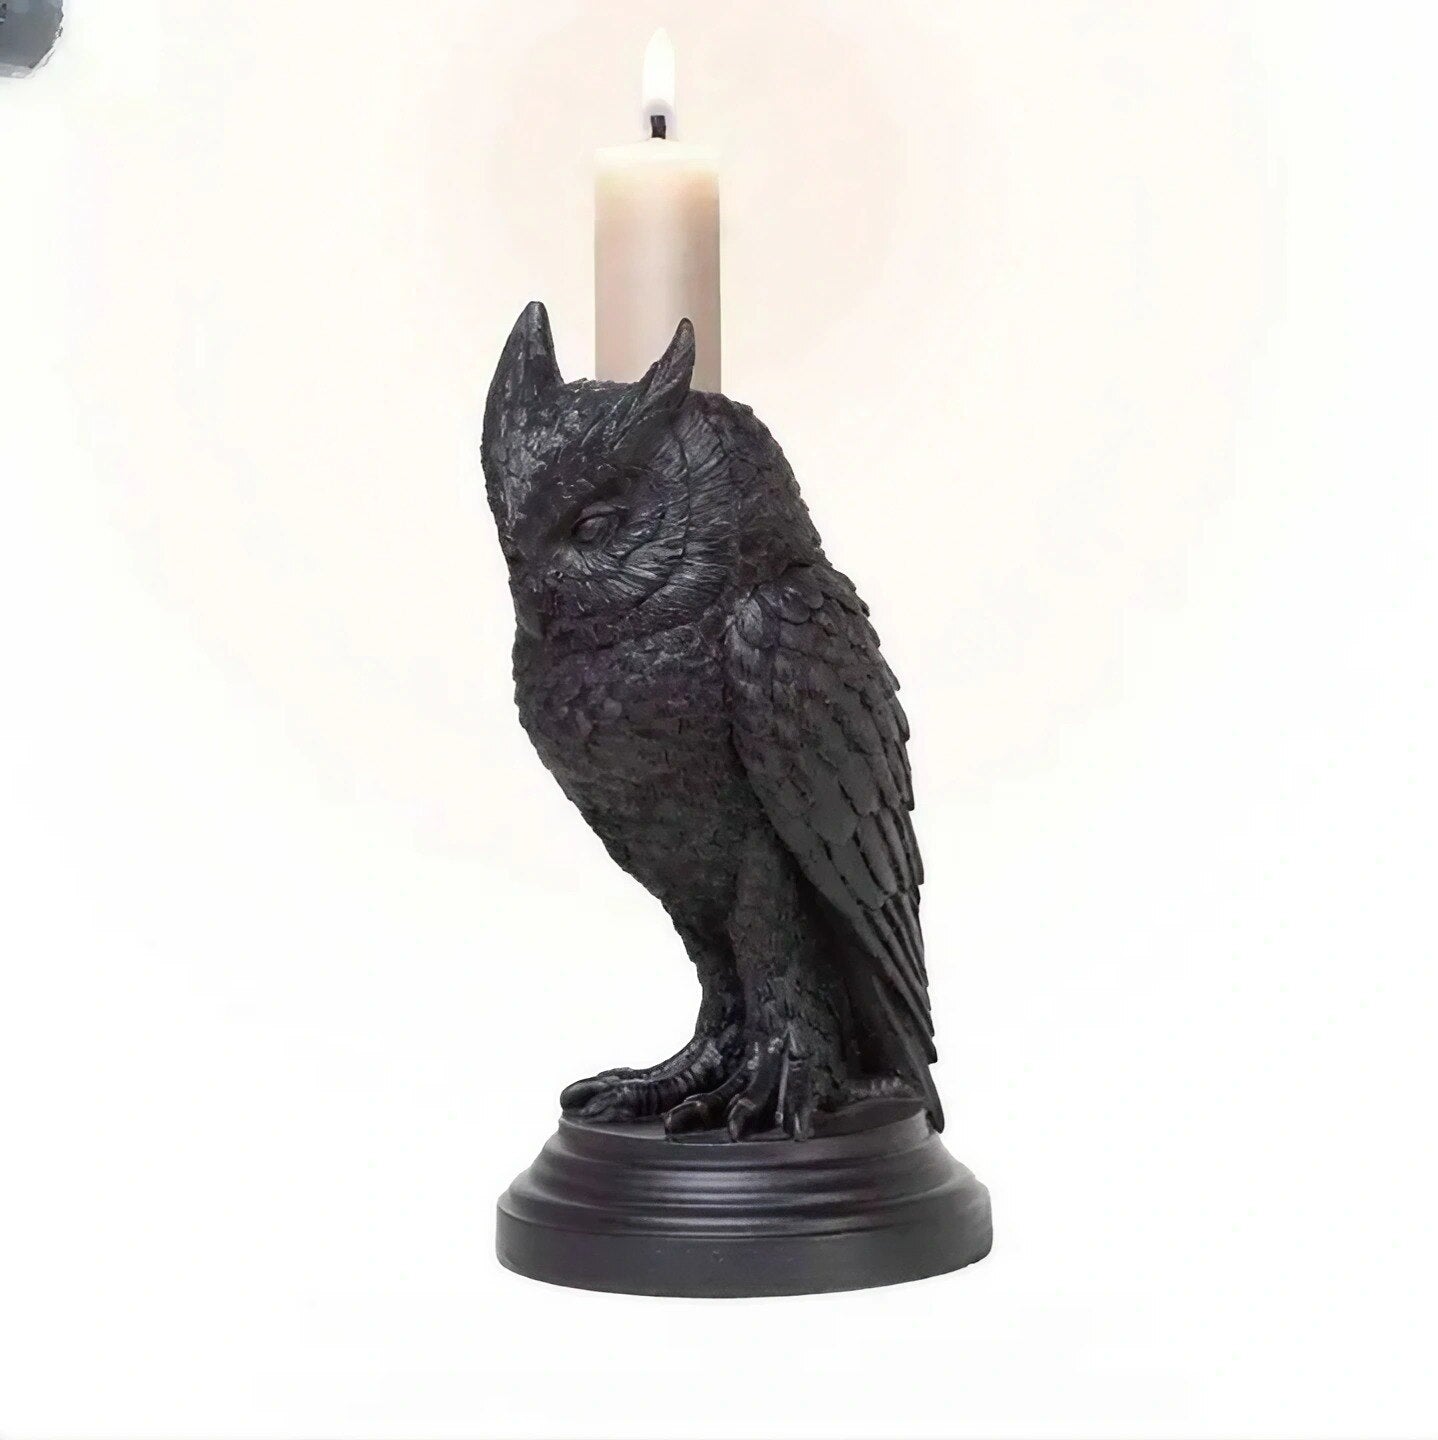 Pemegang Lilin Owl Resin Crafts Halloween Atmosfer Hiasan Gothic Crow Rumah